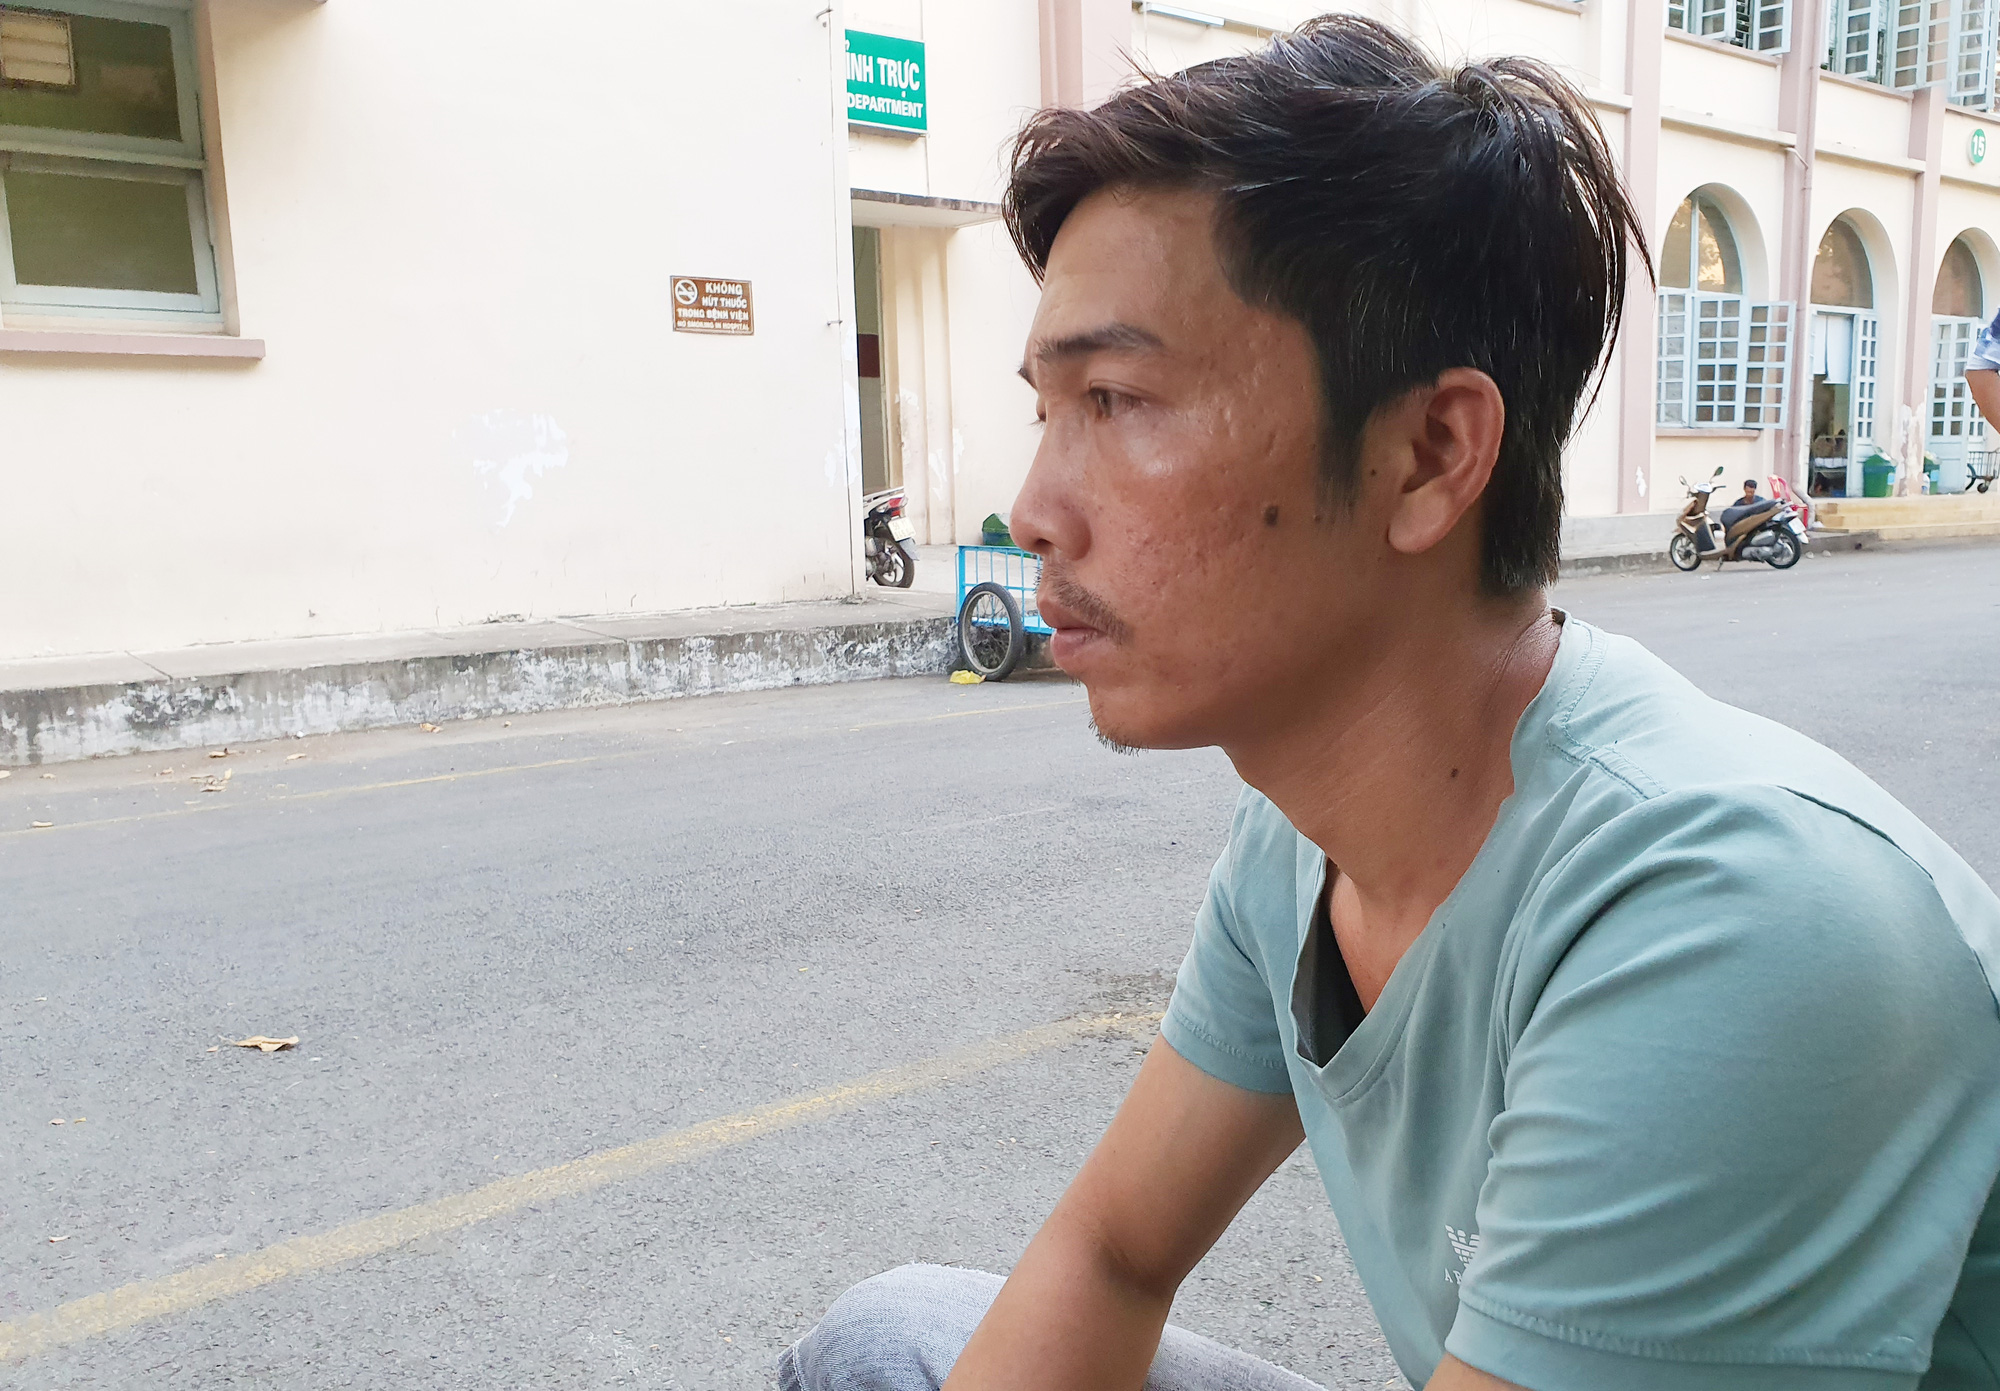 Vụ bé trai 6 tuổi bị dì ruột thiêu sống ở Vũng Tàu: Được ủng hộ hơn 200 triệu, bố bật khóc mong chữa khỏi bệnh cho con - Ảnh 7.